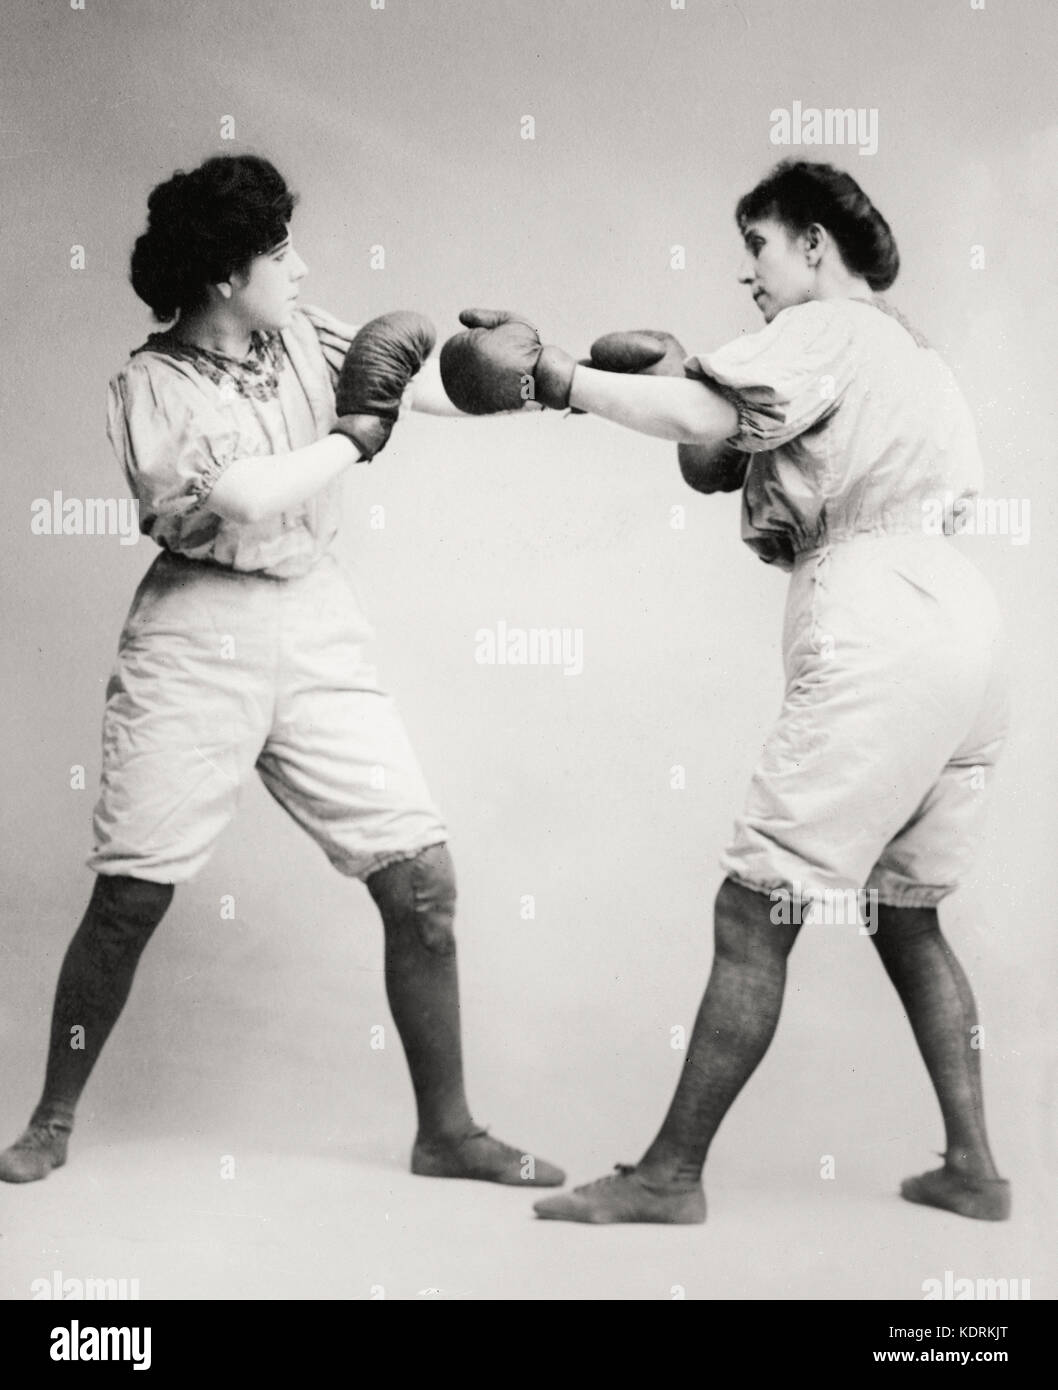 Bennett Schwestern Boxen, um 1910 Stockfoto